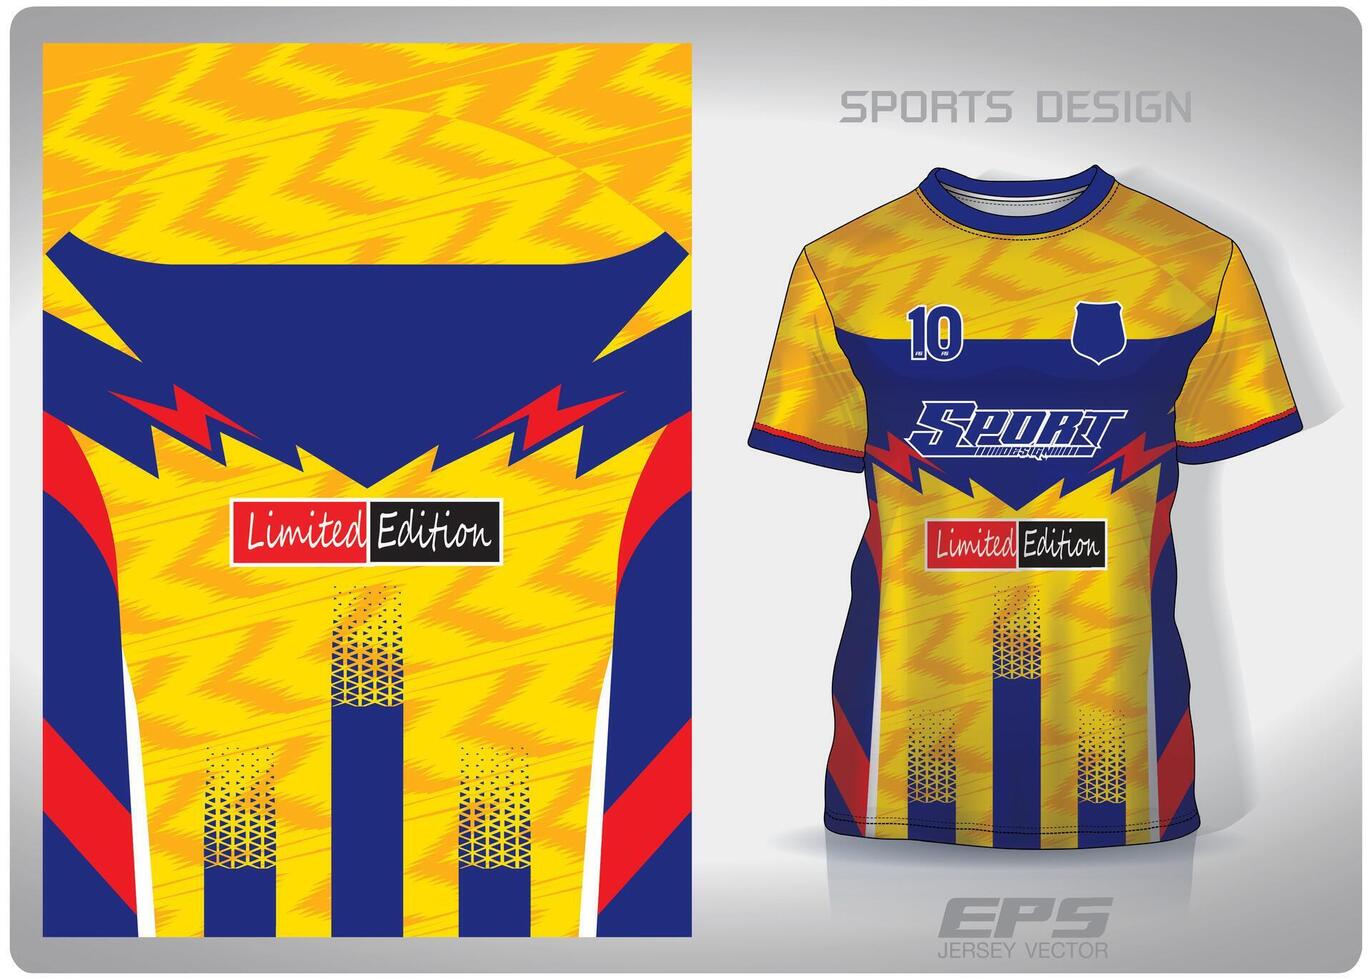 Vektor Sport Hemd Hintergrund Bild.gelb Blau Zickzack- Blitz Muster Design, Illustration, Textil- Hintergrund zum Sport T-Shirt, Fußball Jersey Hemd